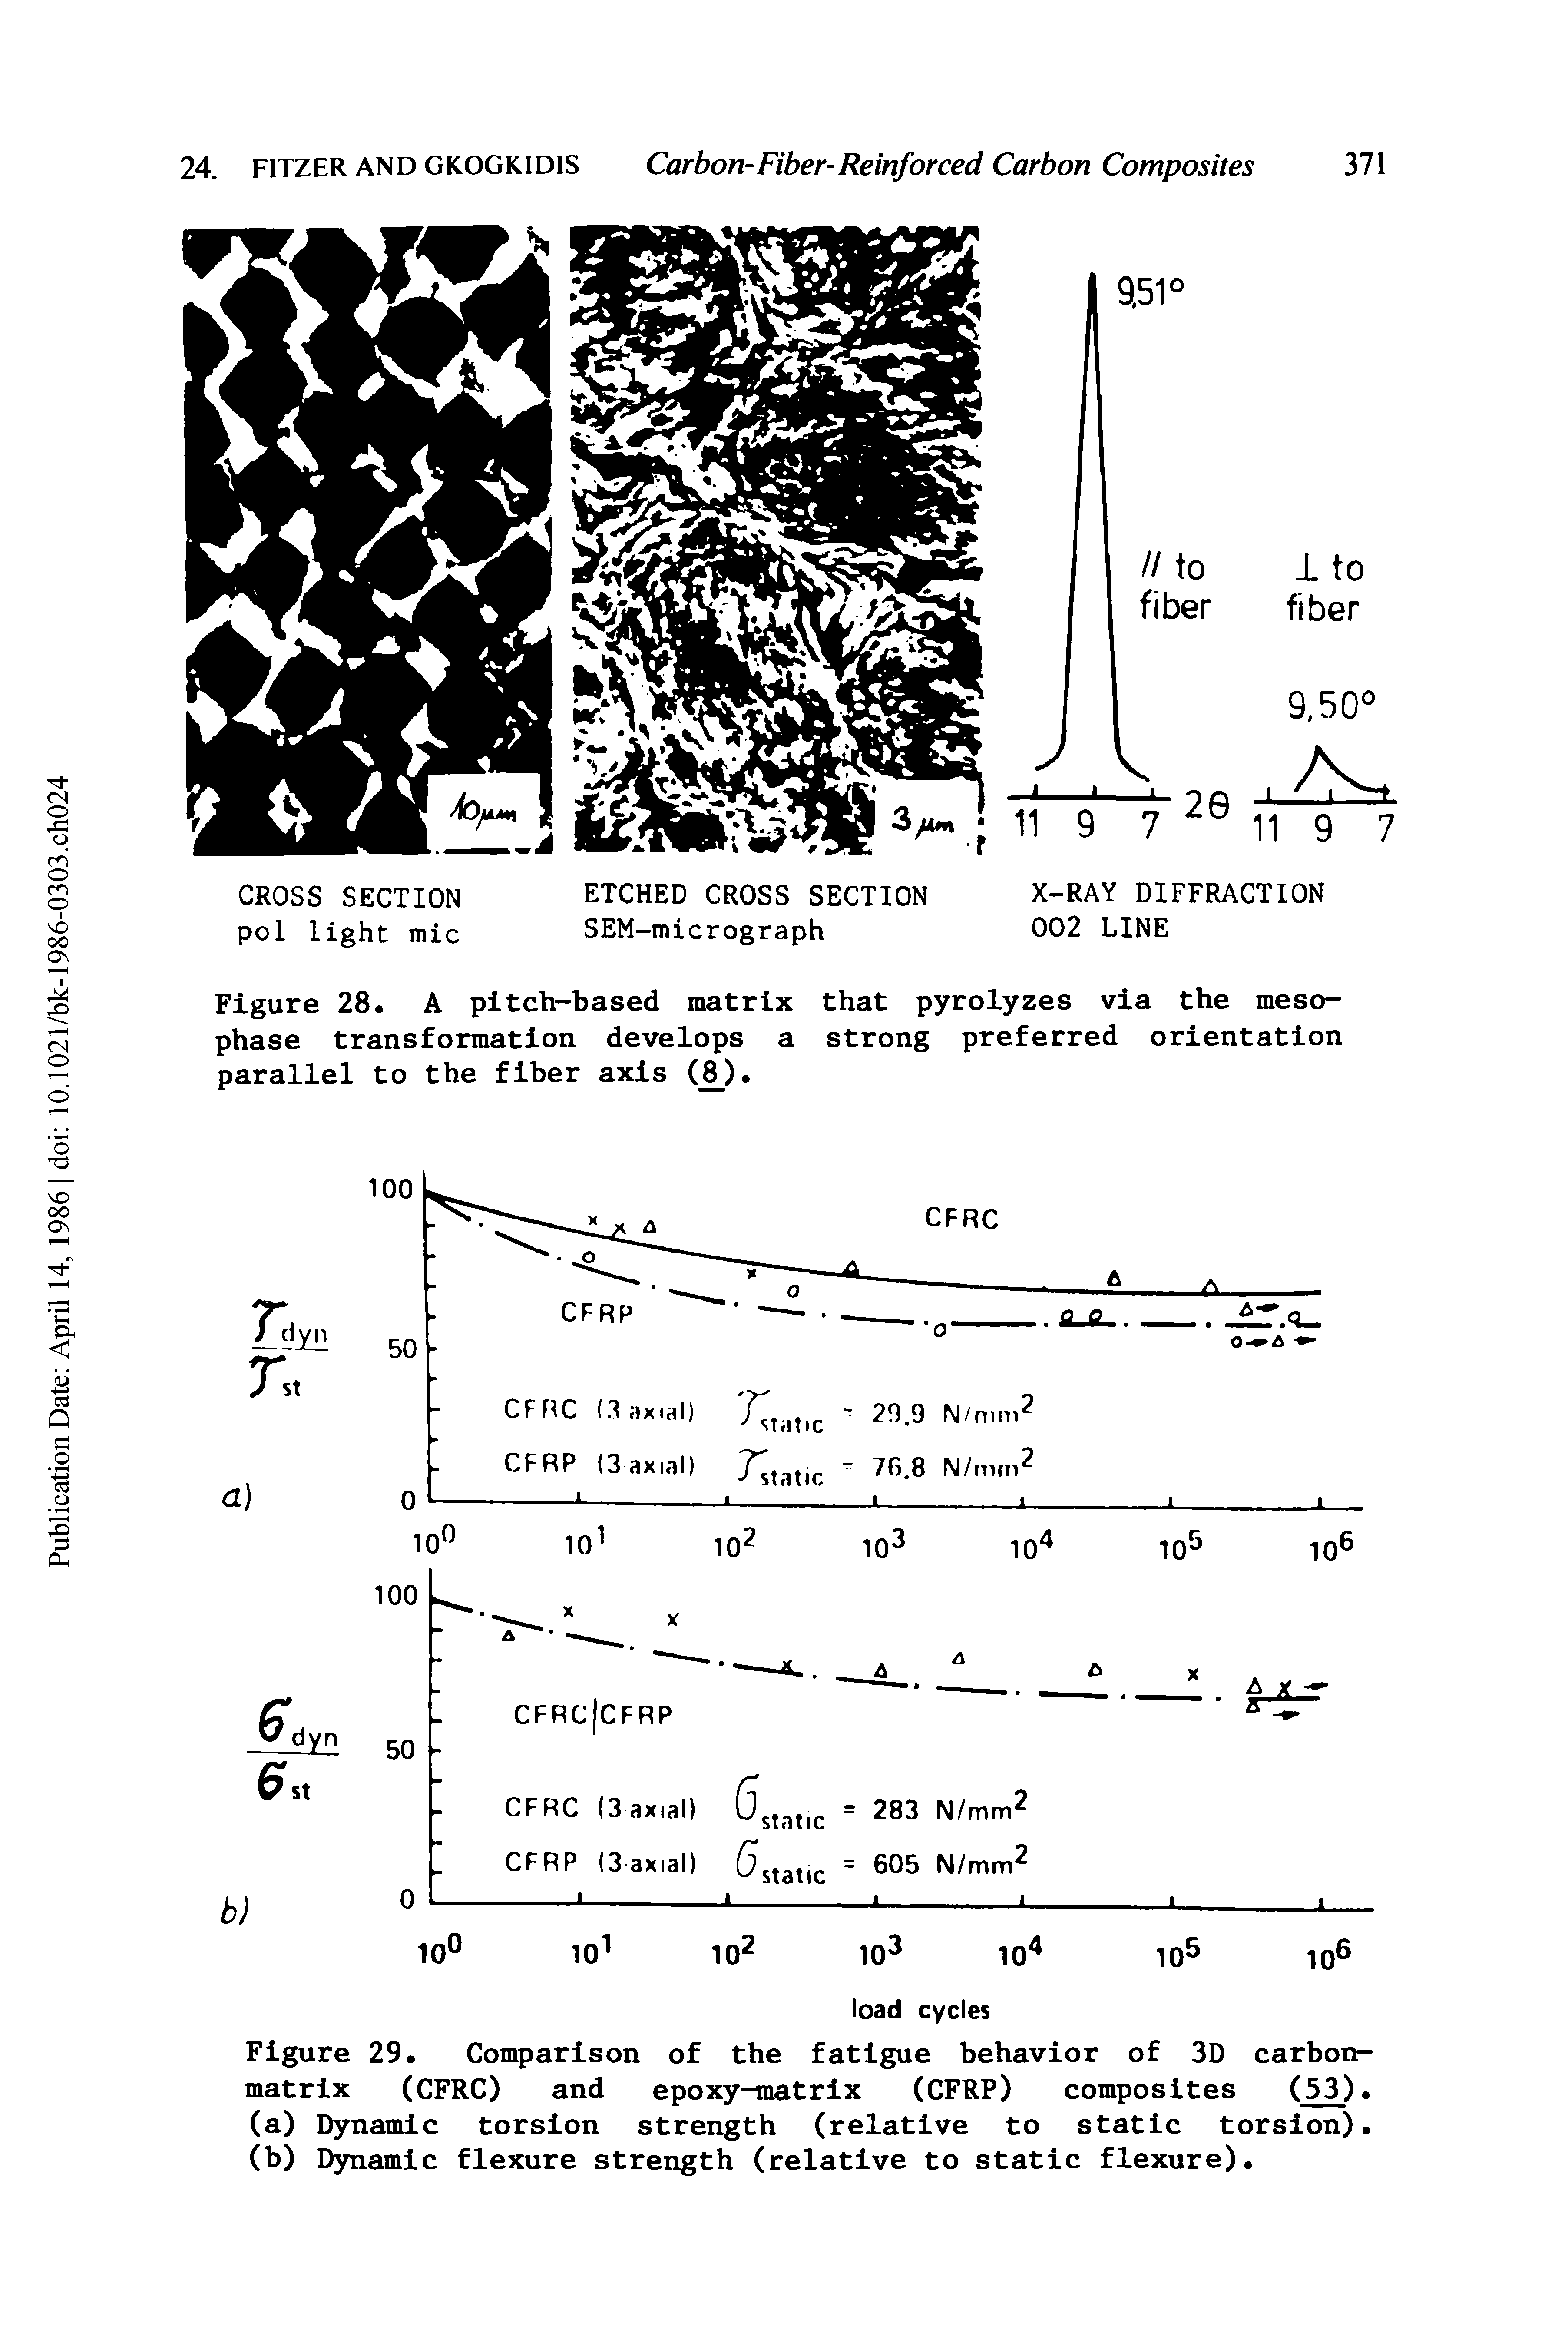 Figure 29. Comparison of the fatigue behavior of 3D carbon-matrix (CFRC) and epoxy-matrix (CFRP) composites (53).